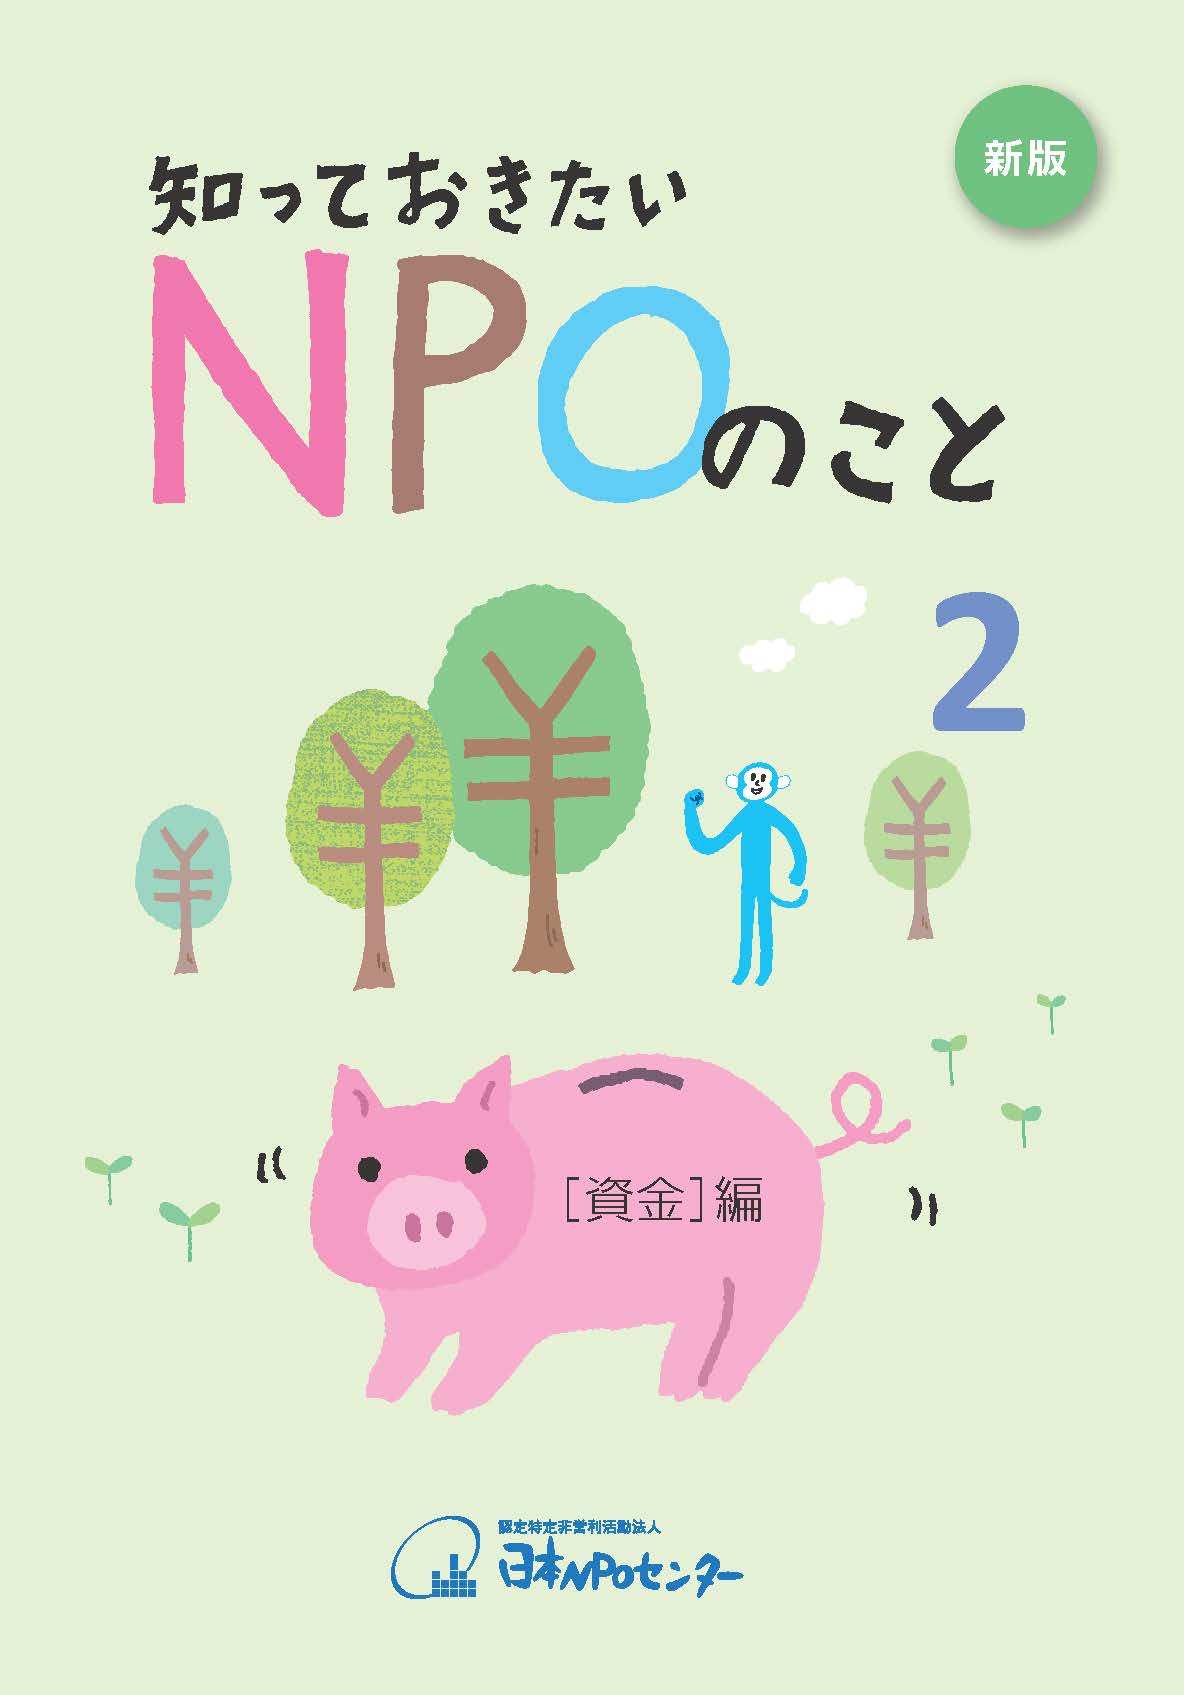 「 知っておきたいNPOのこと２【資金編】」新版へリニューアルし10月上旬に発売開始！